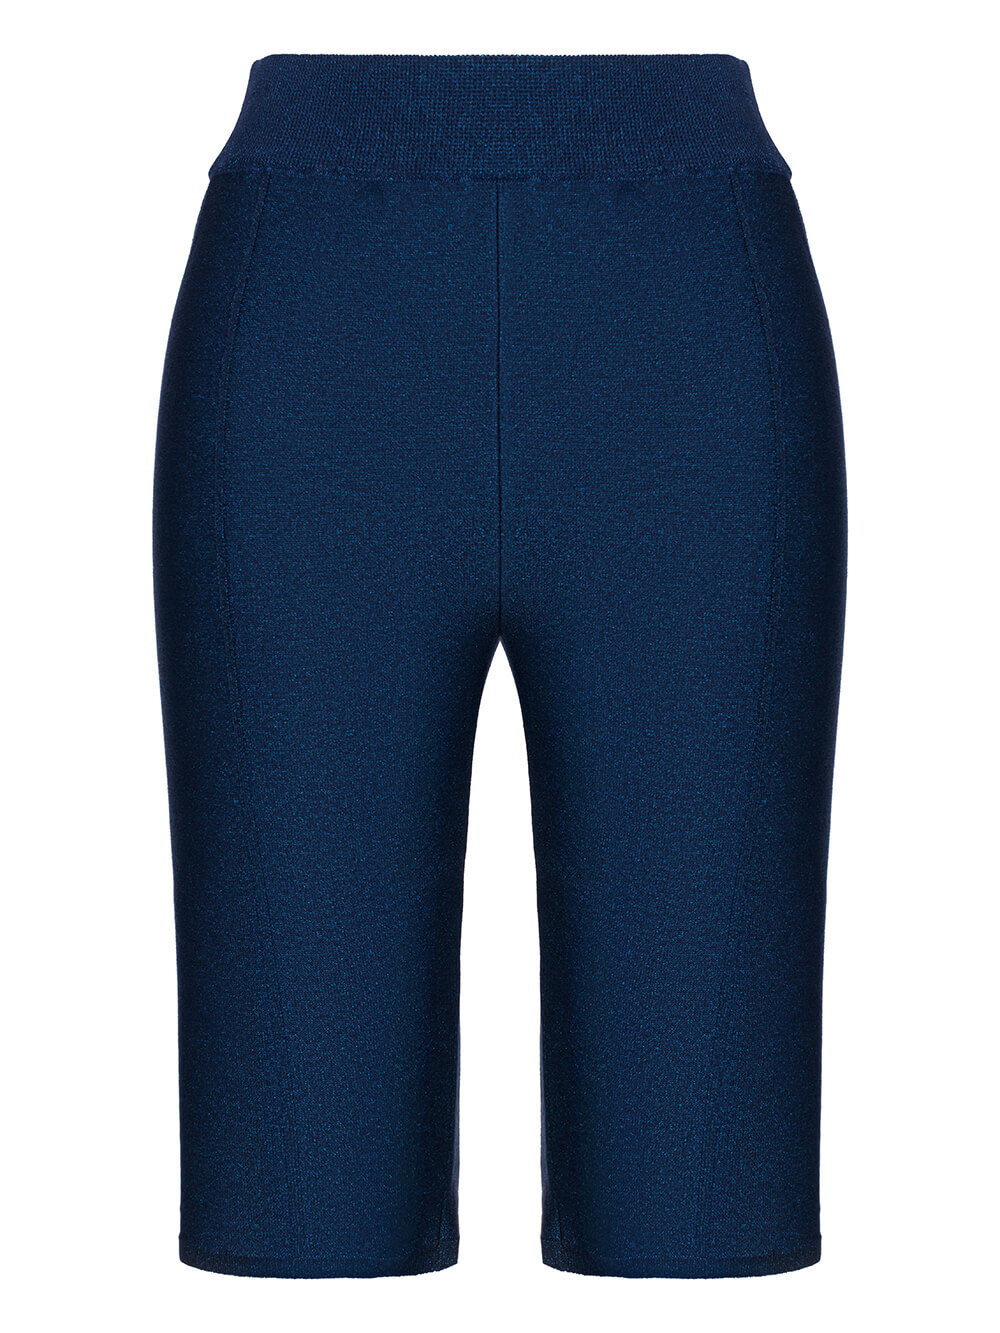 Женские шорты темно-синего цвета из вискозы